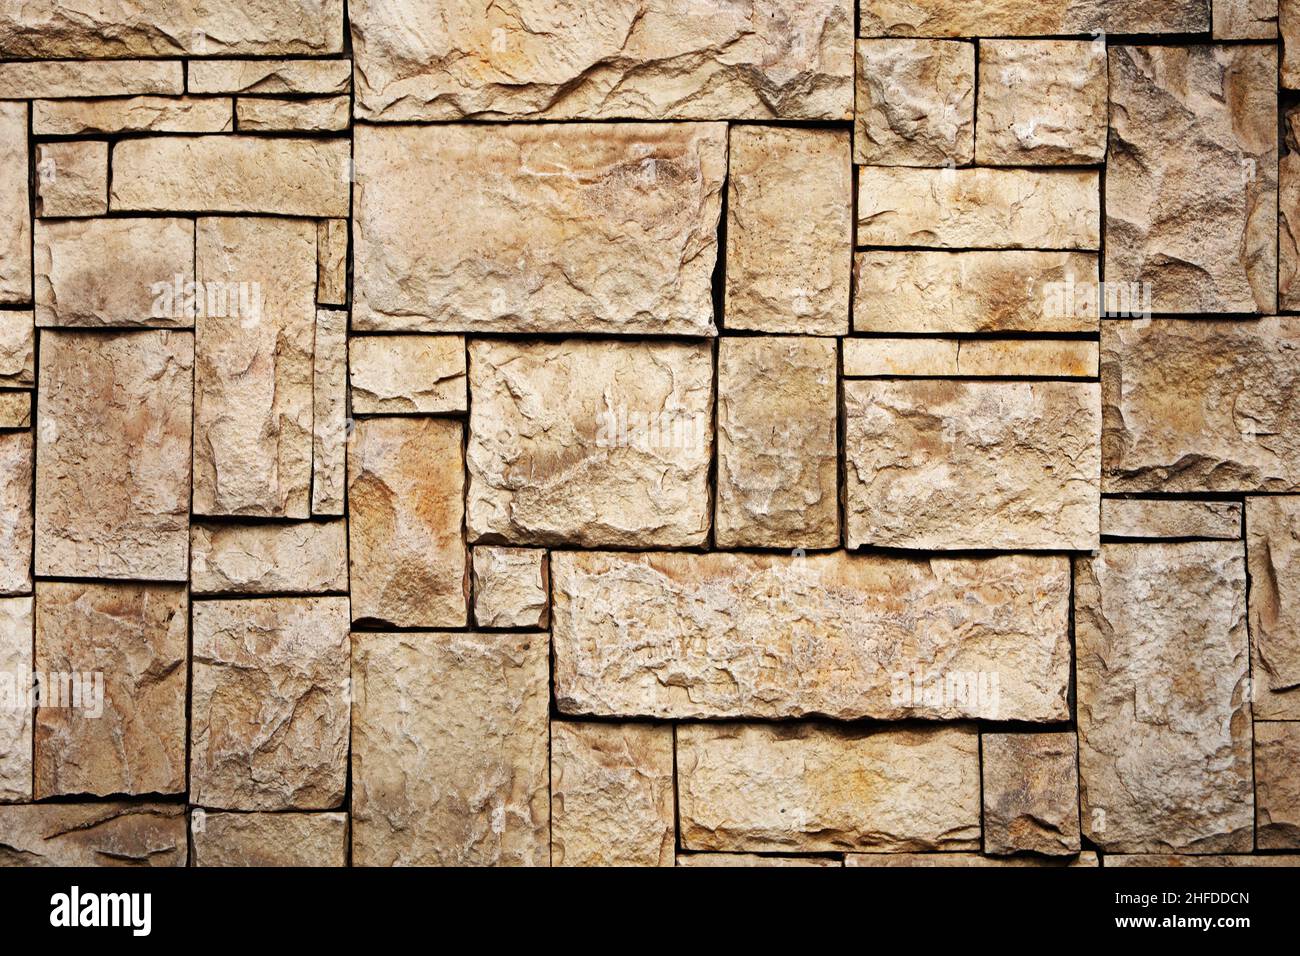 Fotografia per il materiale di fondo della parete utilizzando pietre di varie dimensioni Foto Stock